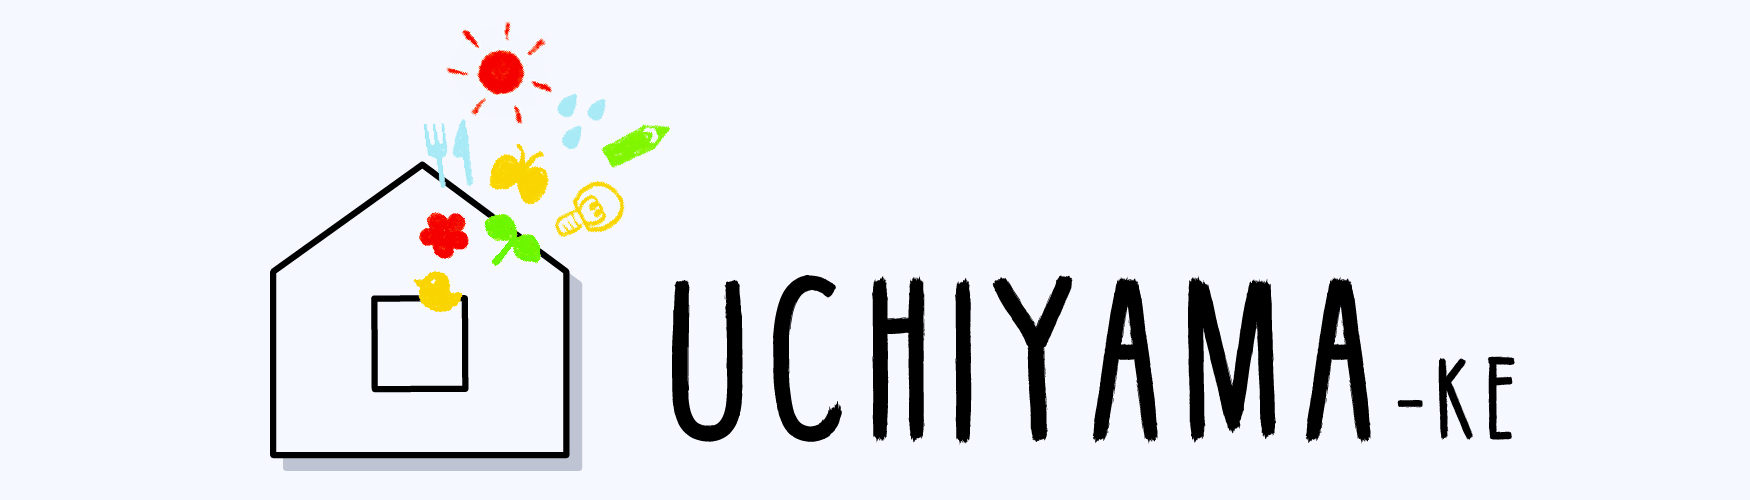 UCHIYAMA-KE